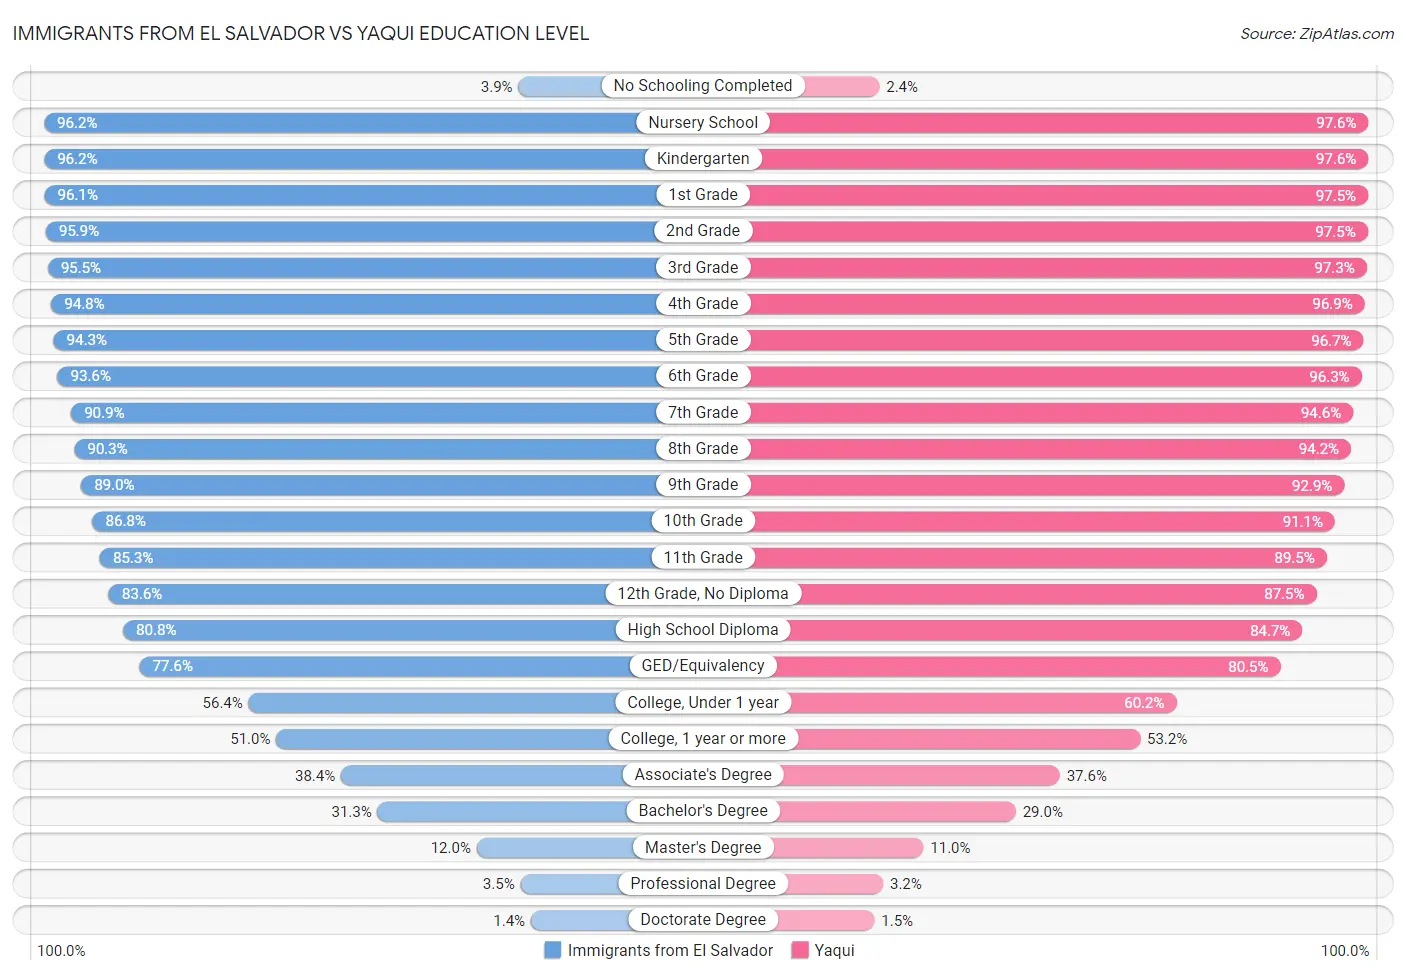 Immigrants from El Salvador vs Yaqui Education Level